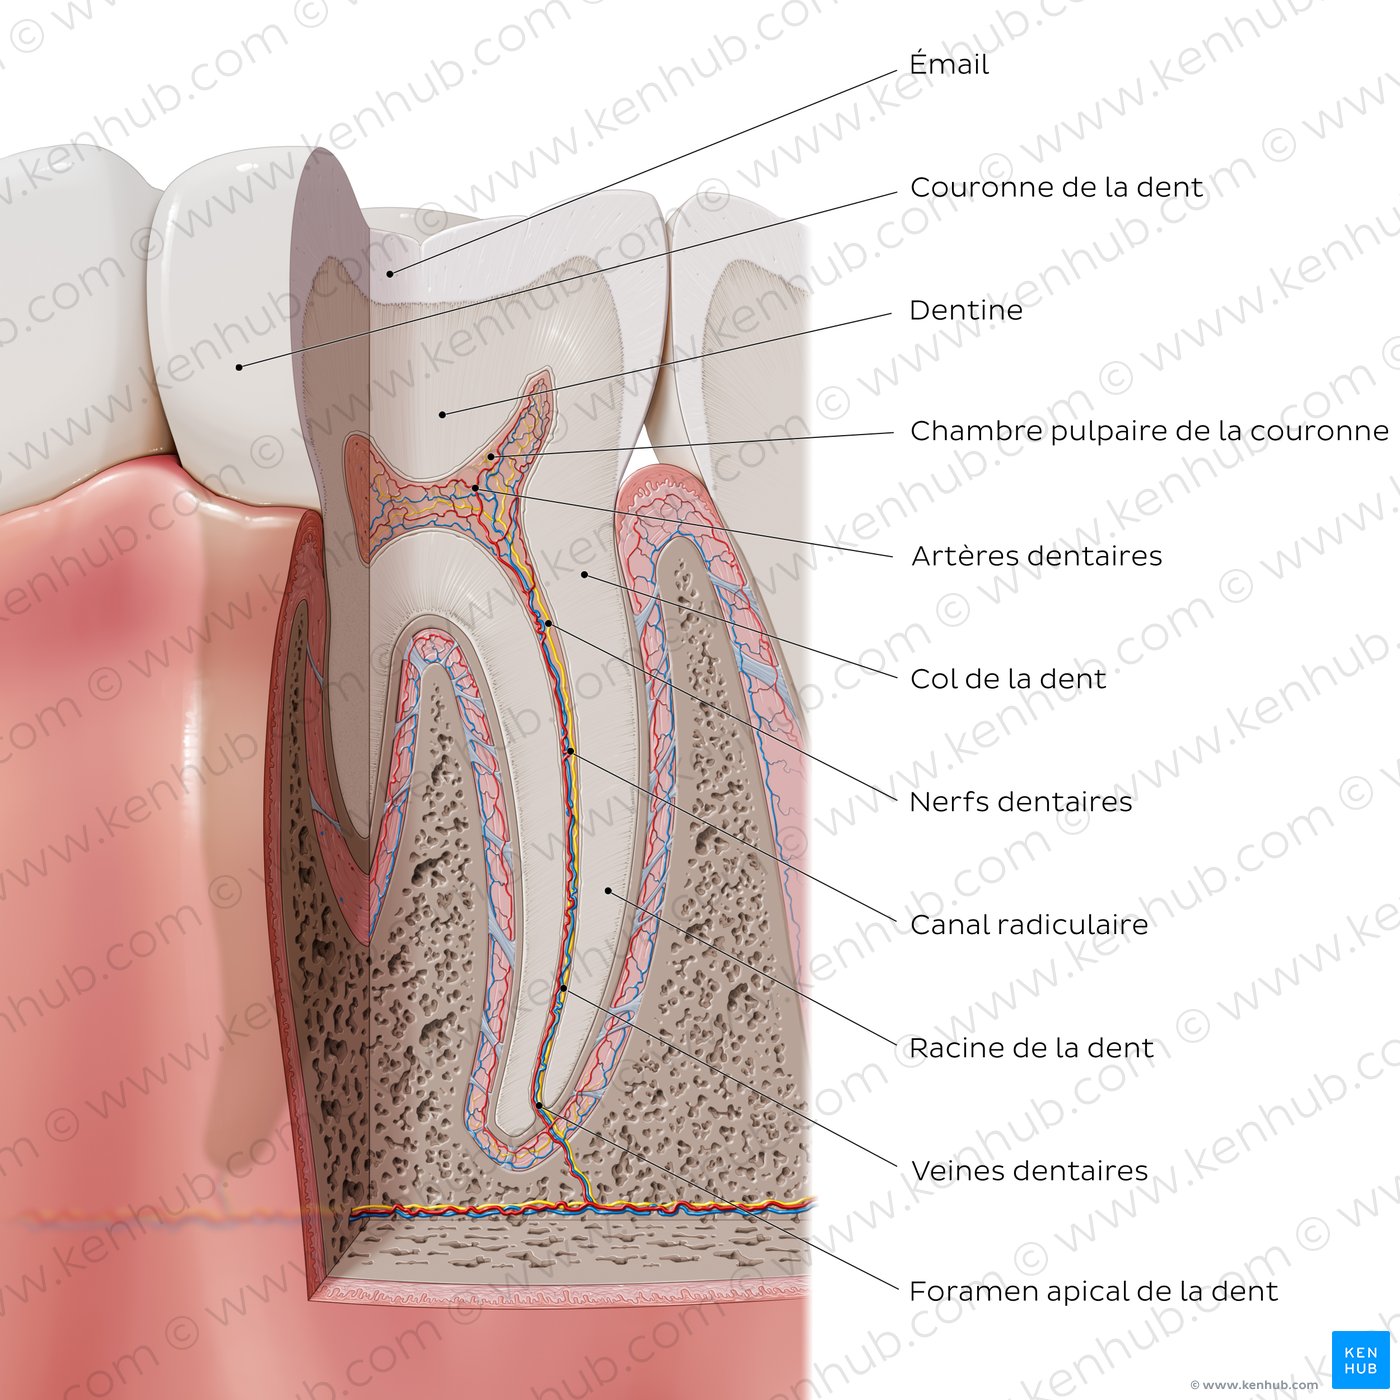 Composants principaux d’une dent (schéma)